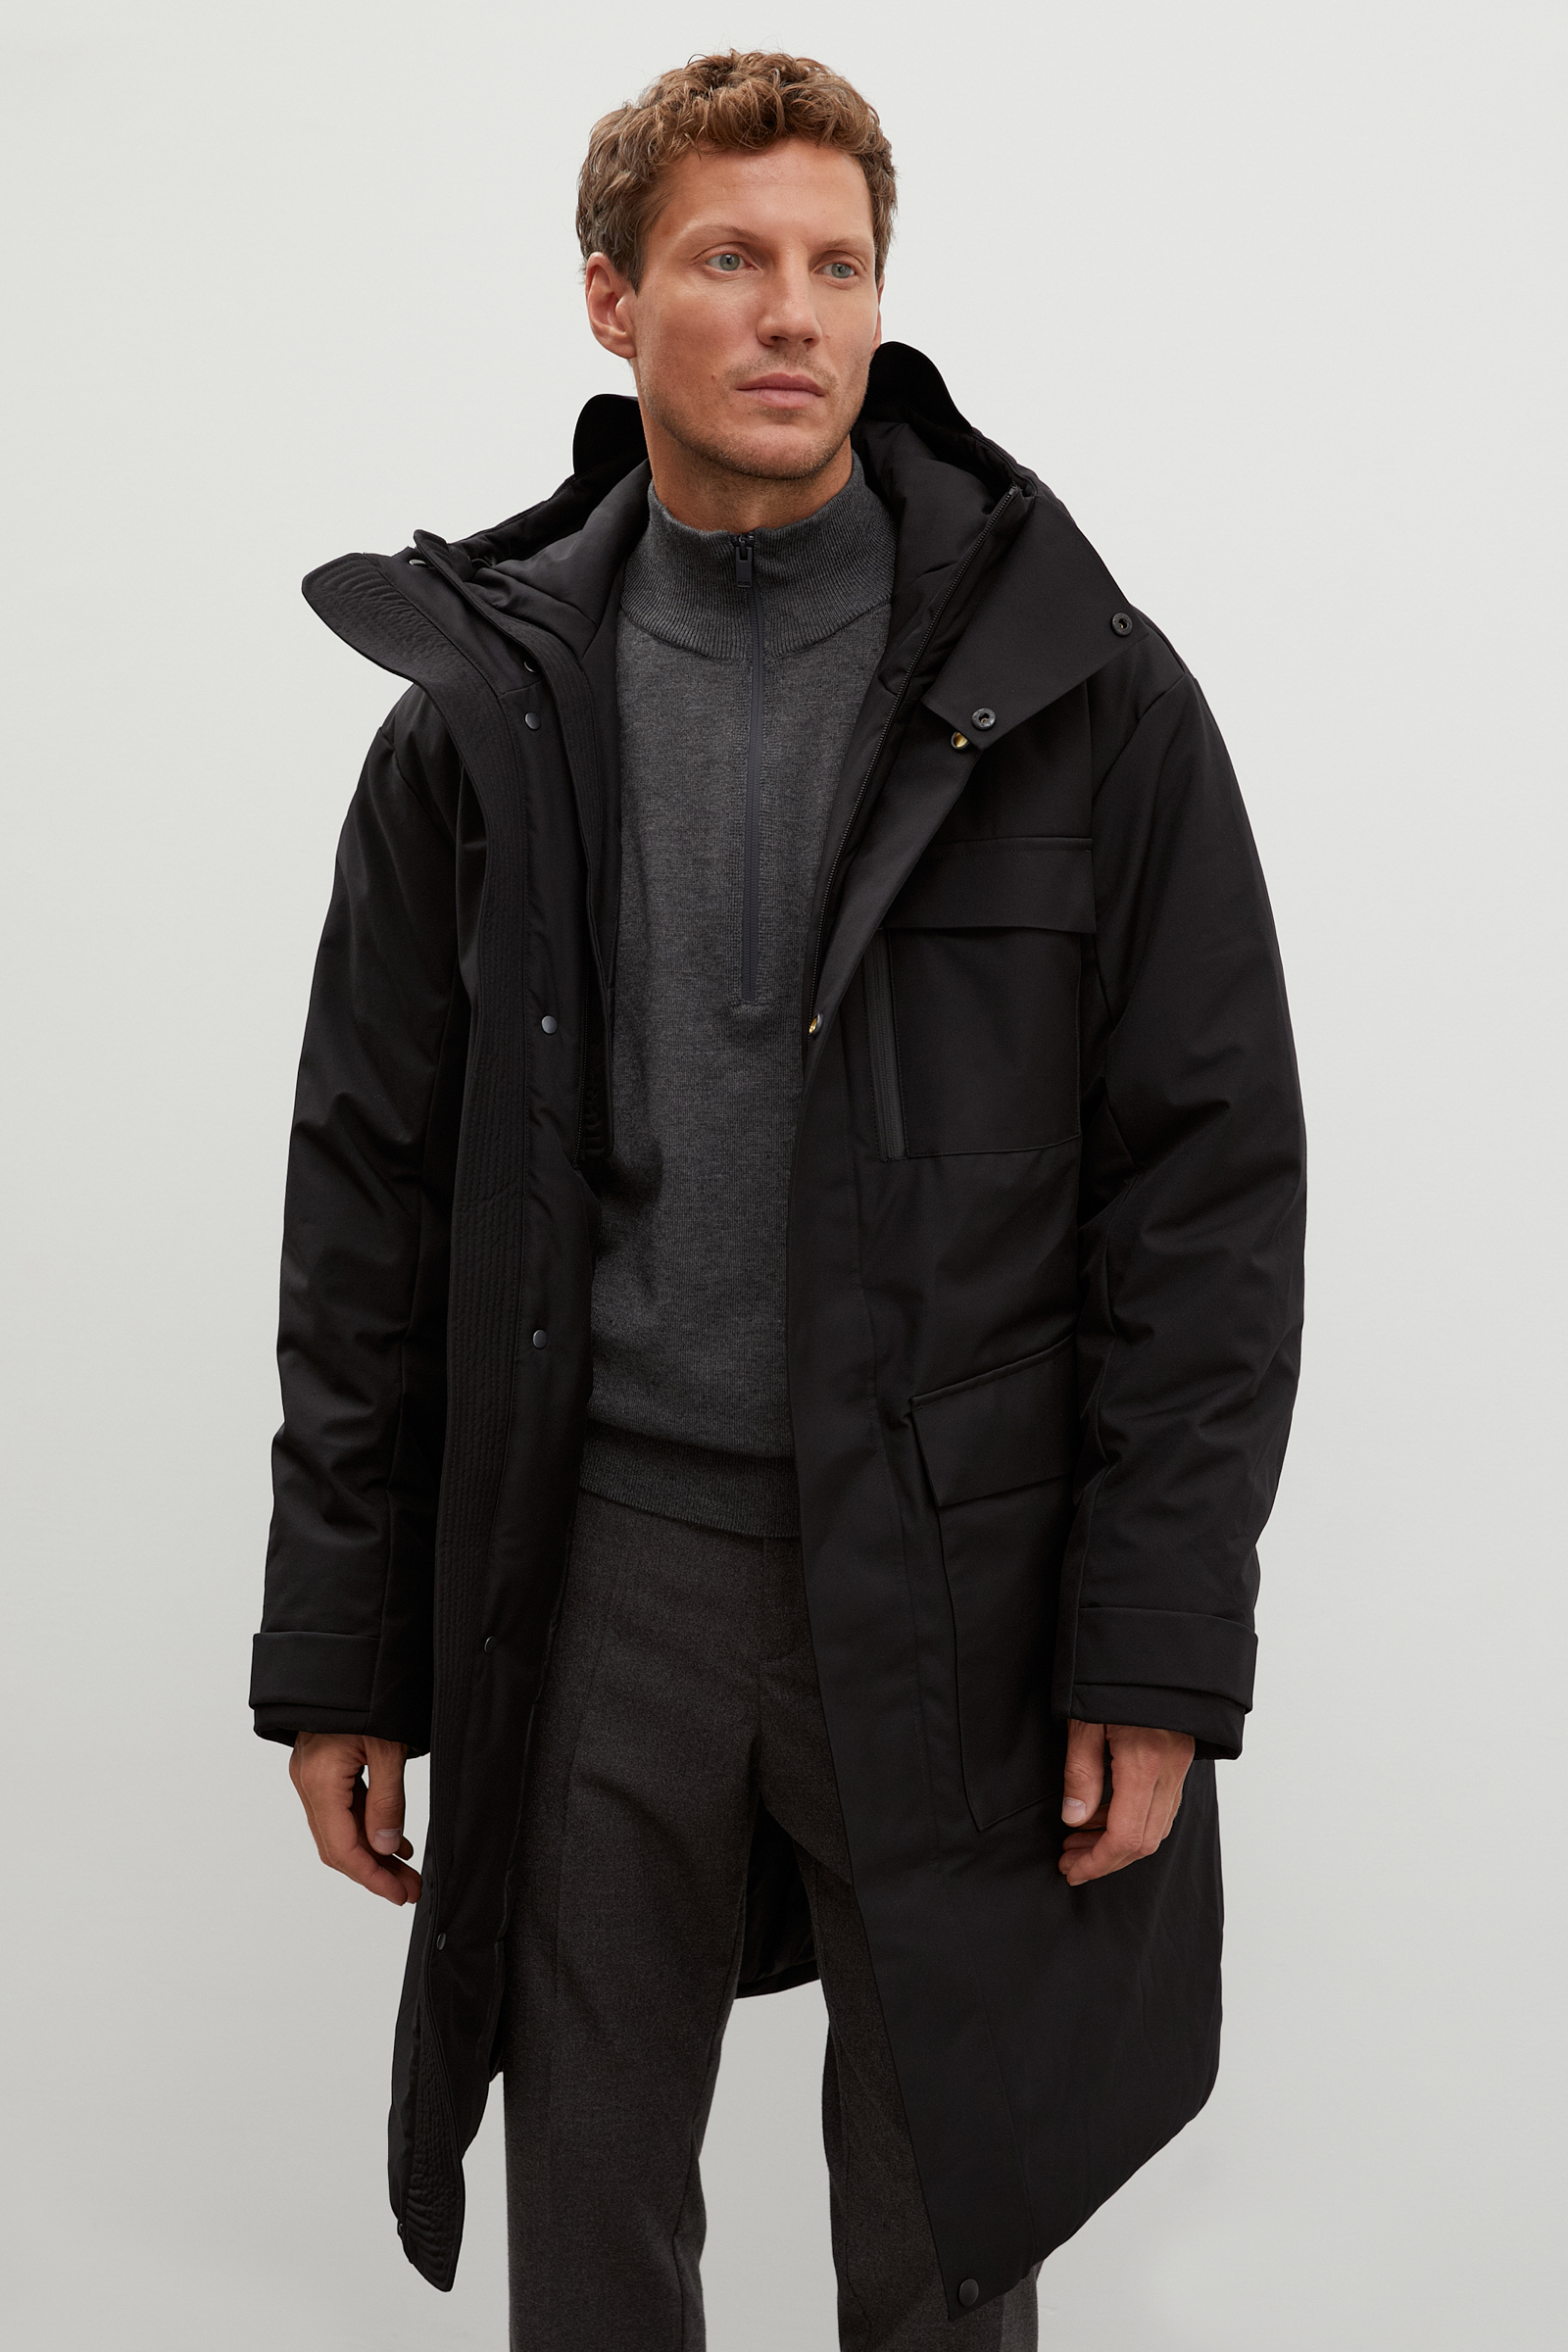 Зимняя куртка мужская Finn Flare FWB61029 черная 2XL